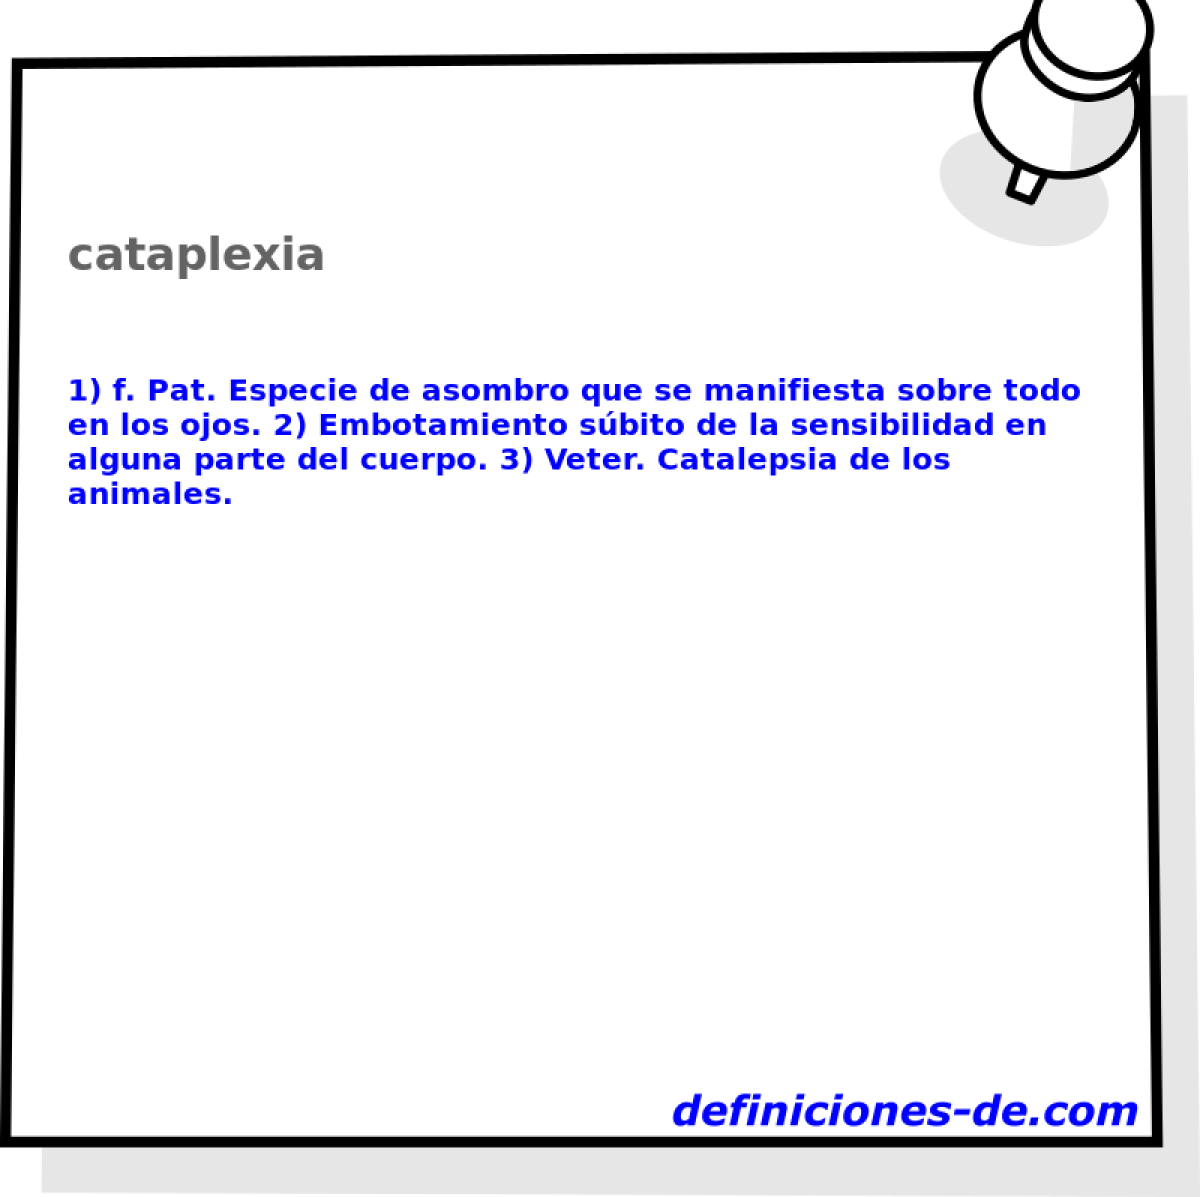 cataplexia 